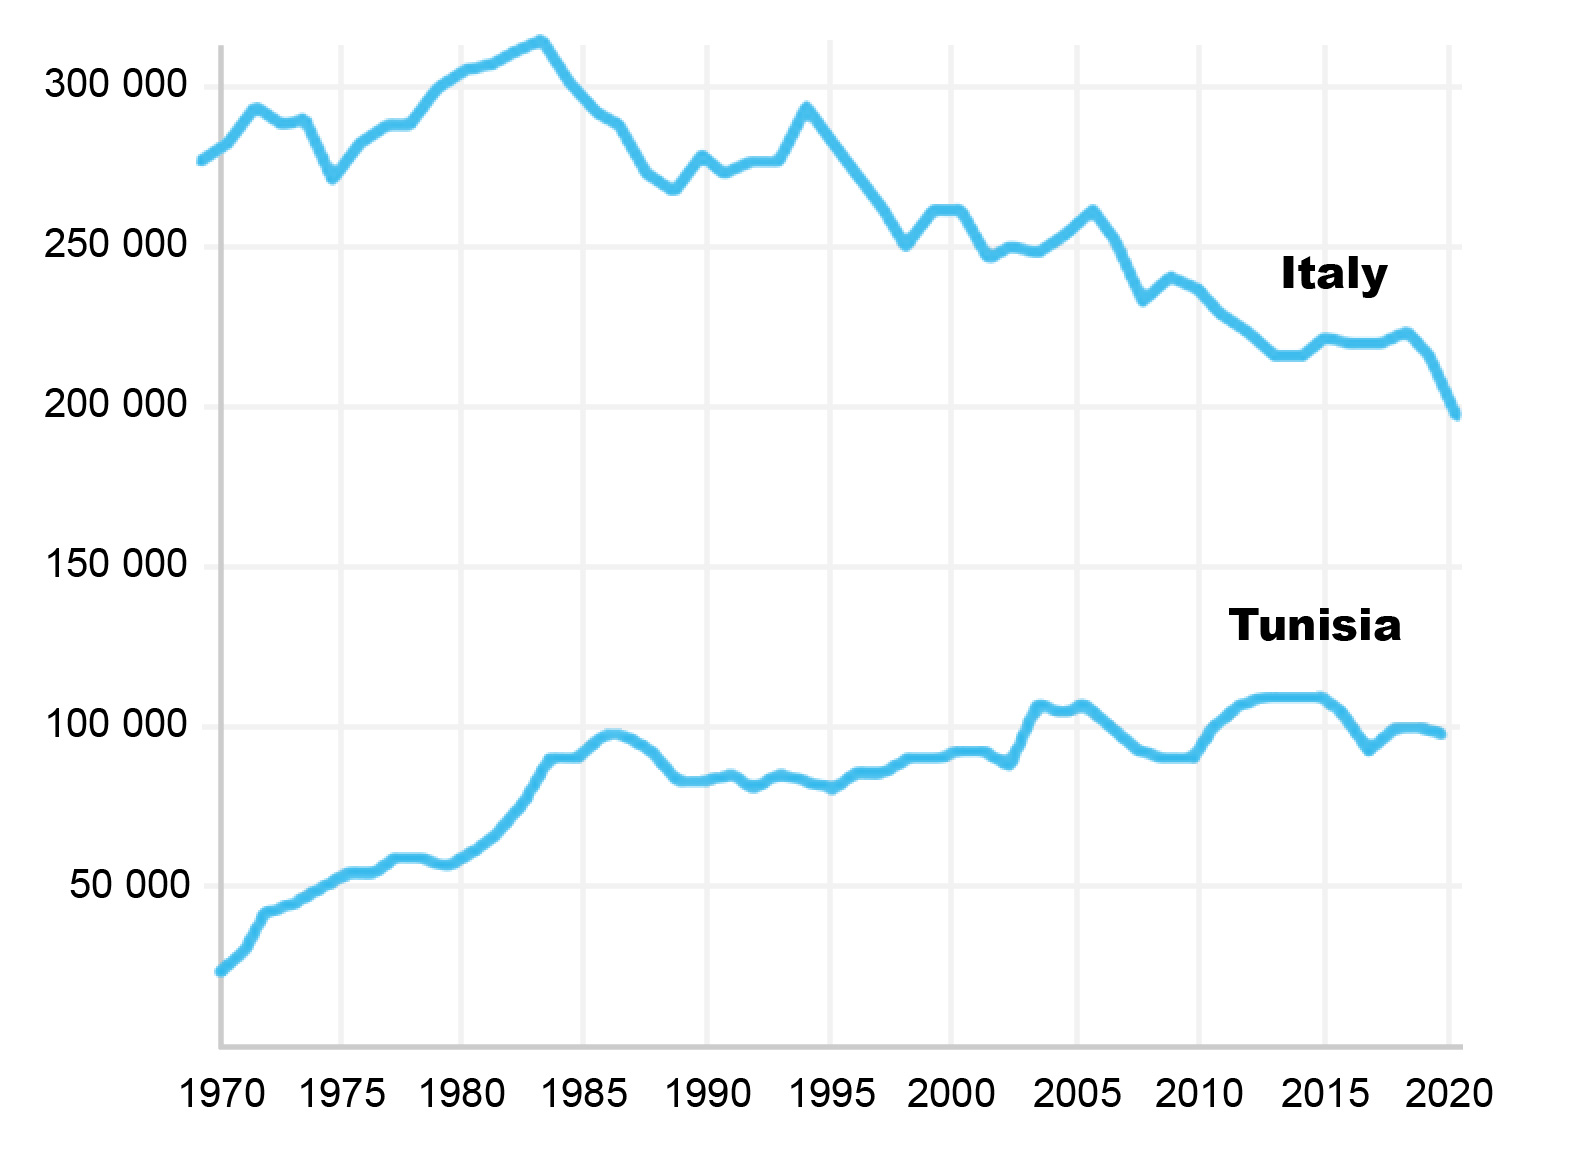 [Anlandungen von Fischereierzeugnissen in Tonnen (Y) in italienischen und tunesischen Häfen von 1970 bis 2020. Quelle: The State of the Mediterranean and Black Sea Fisheries 2022]